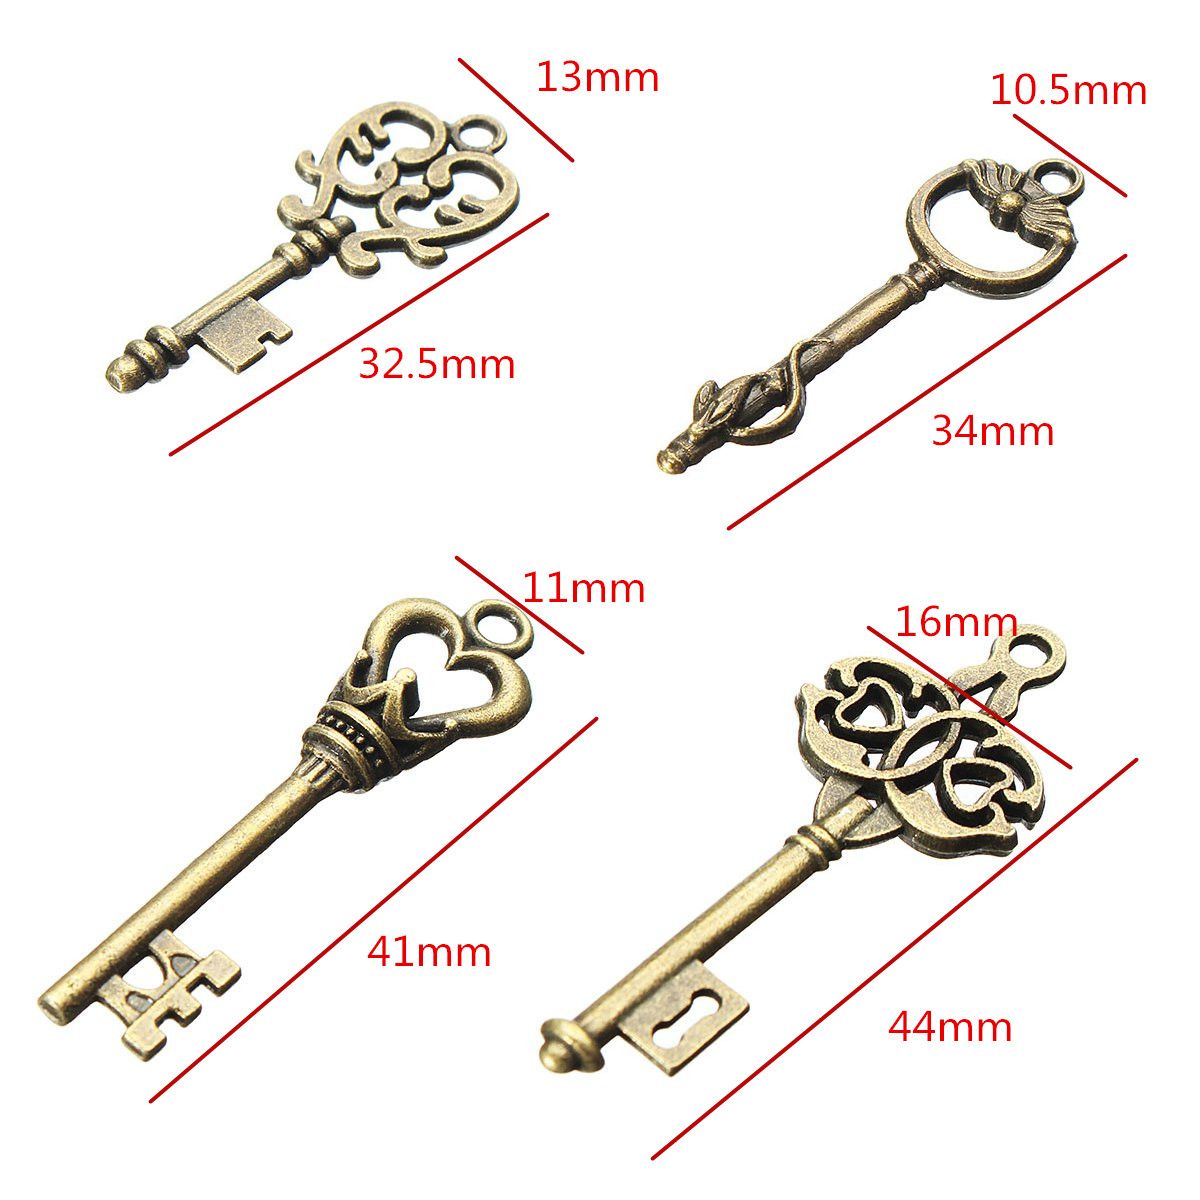 4Pcs-Vintage-Bronze-Key-For-Pendant-Necklace-Bracelet-DIY-Handmade-Accessories-Decoration-1192633